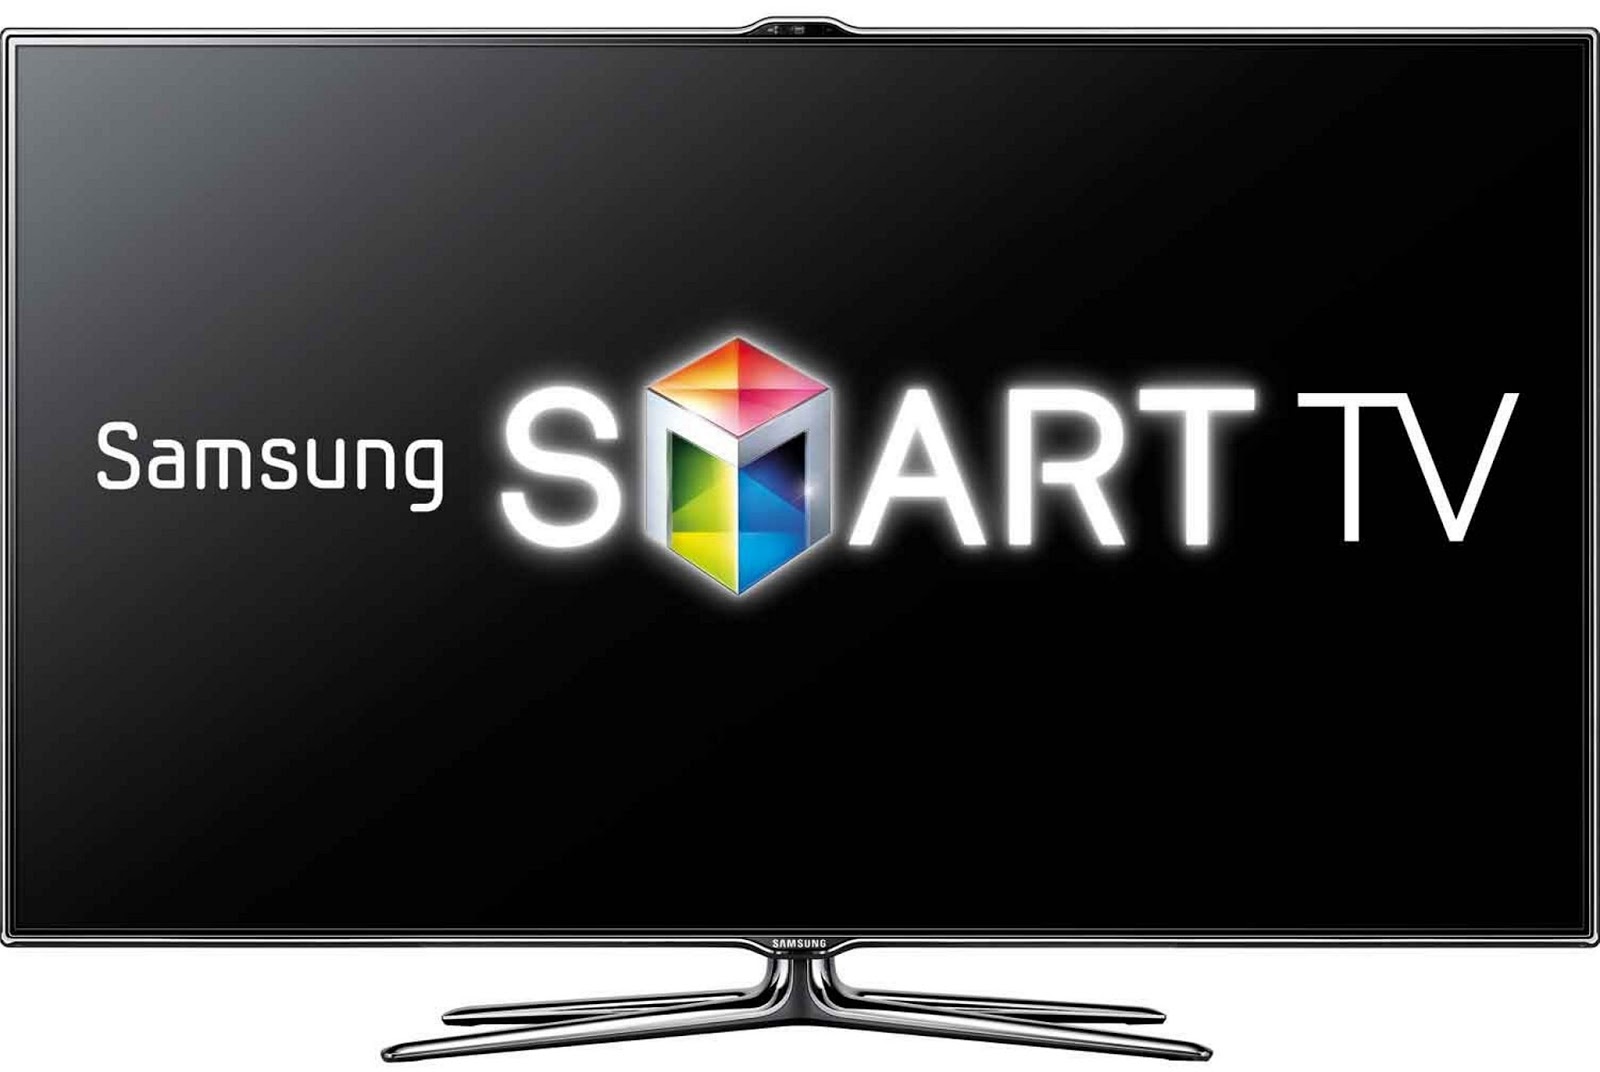 Samsung Smart Tv Wallpaper - Samsung Smart Ss Iptv , HD Wallpaper & Backgrounds